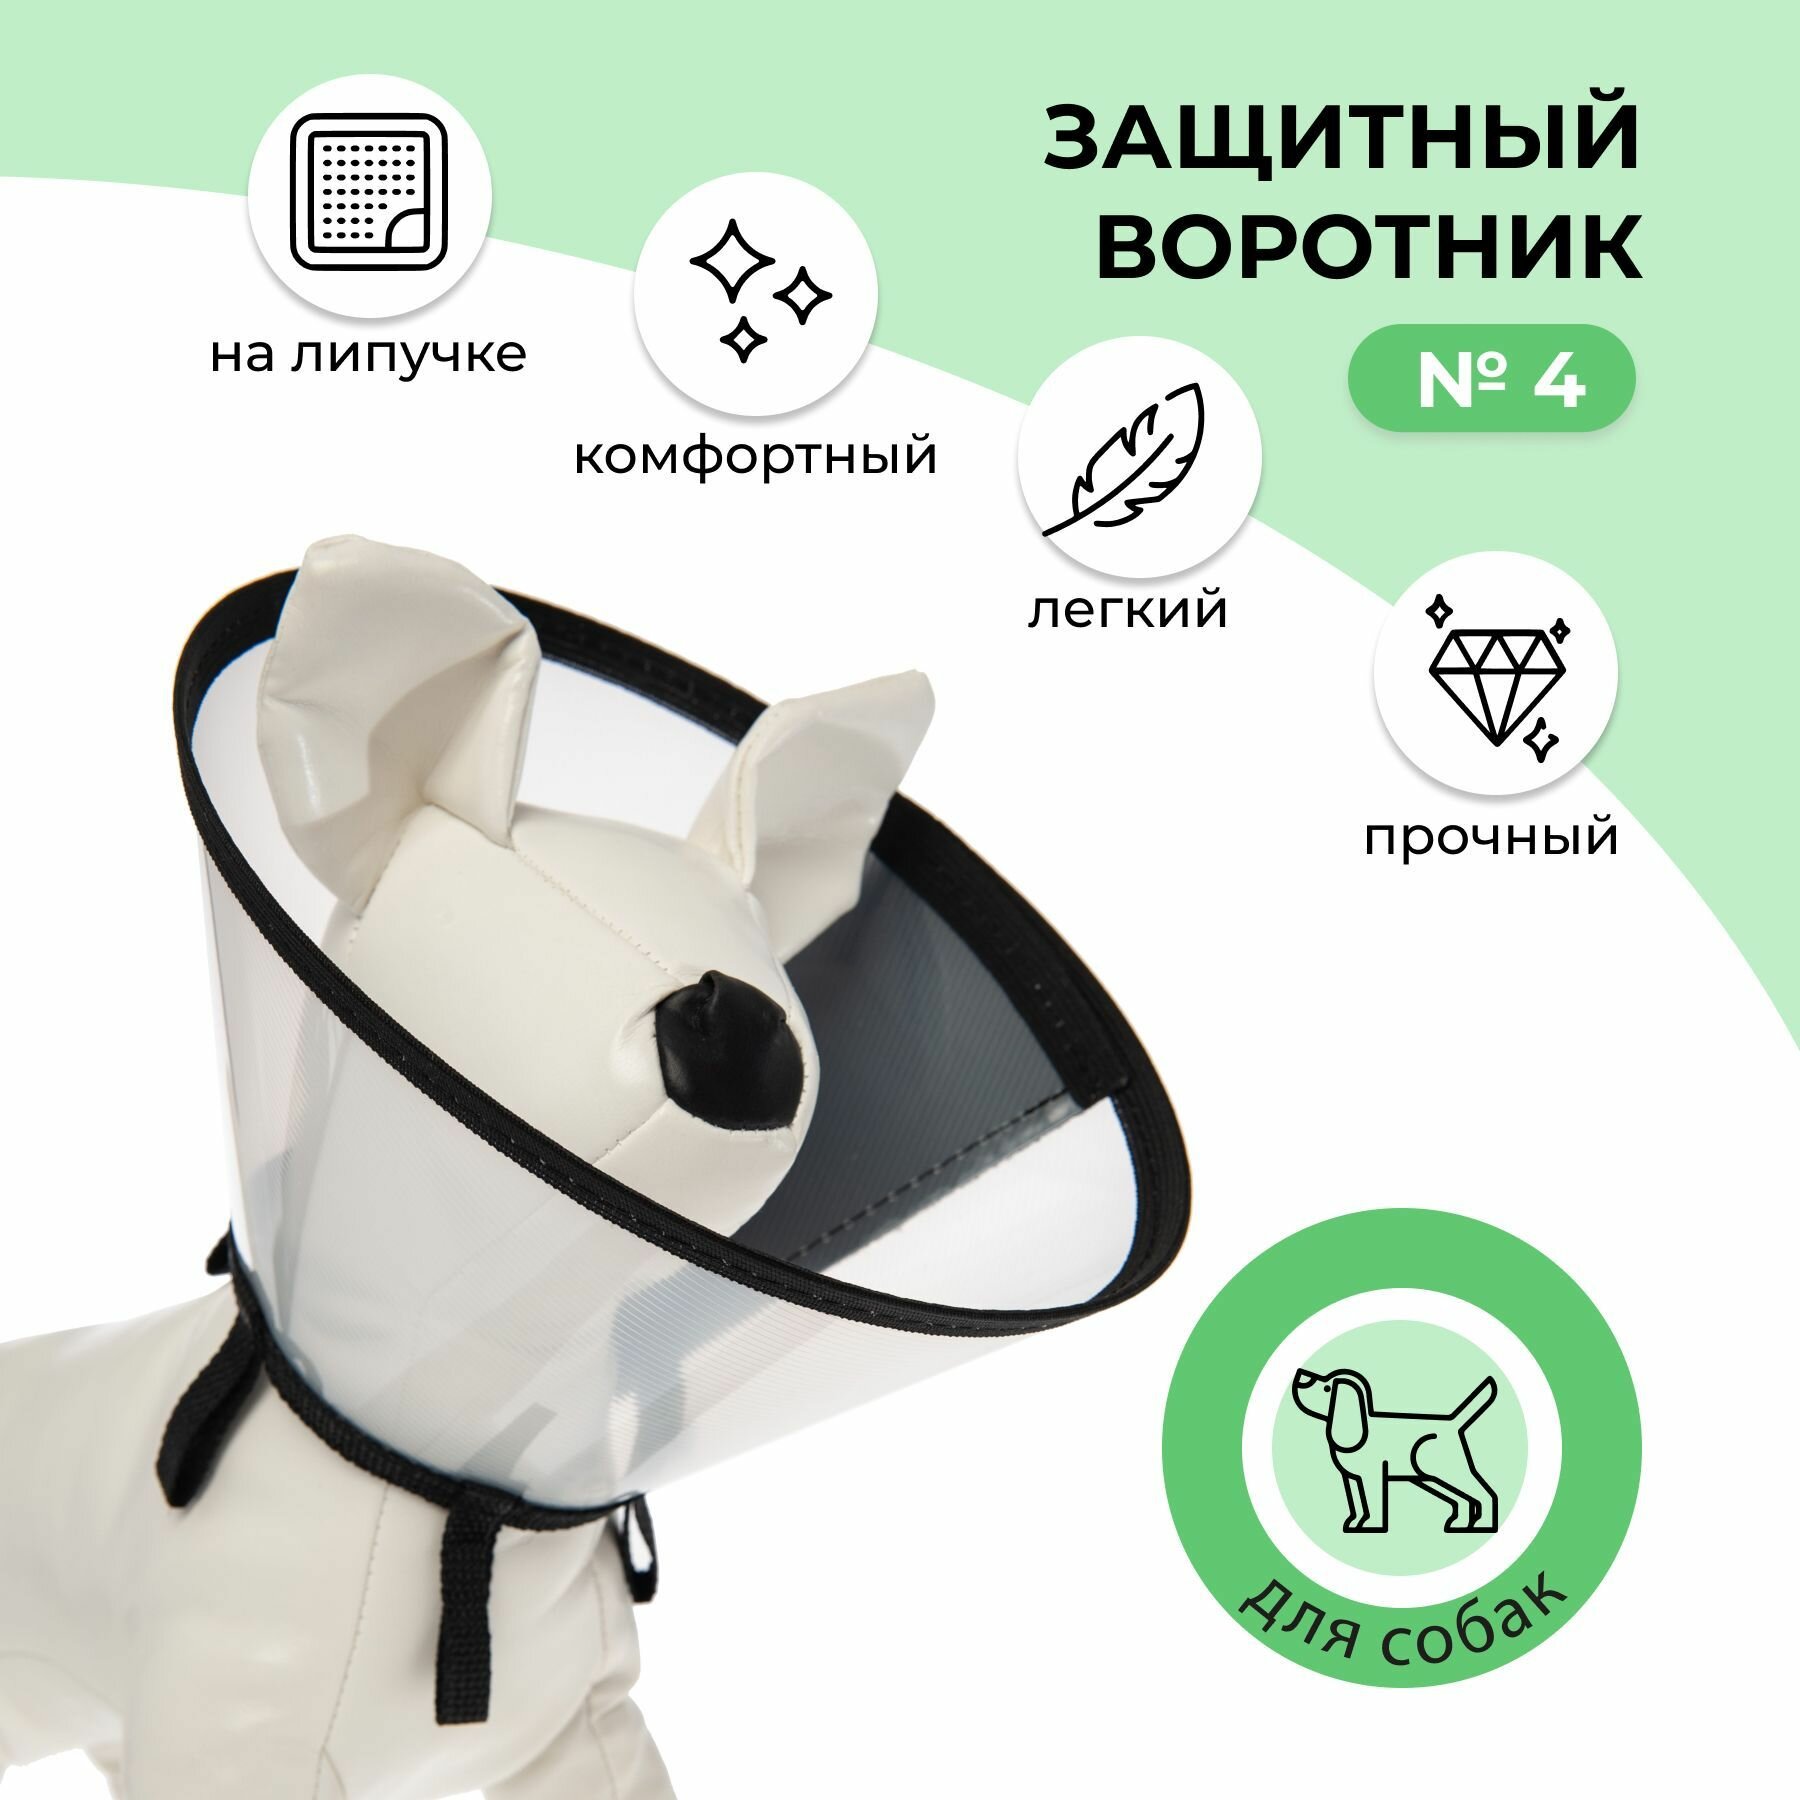 Воротник защитный ветеринарный пластиковый на липучке для животных кошек и собак №4, обхват шеи от 30 до 35 см, высота 15 см